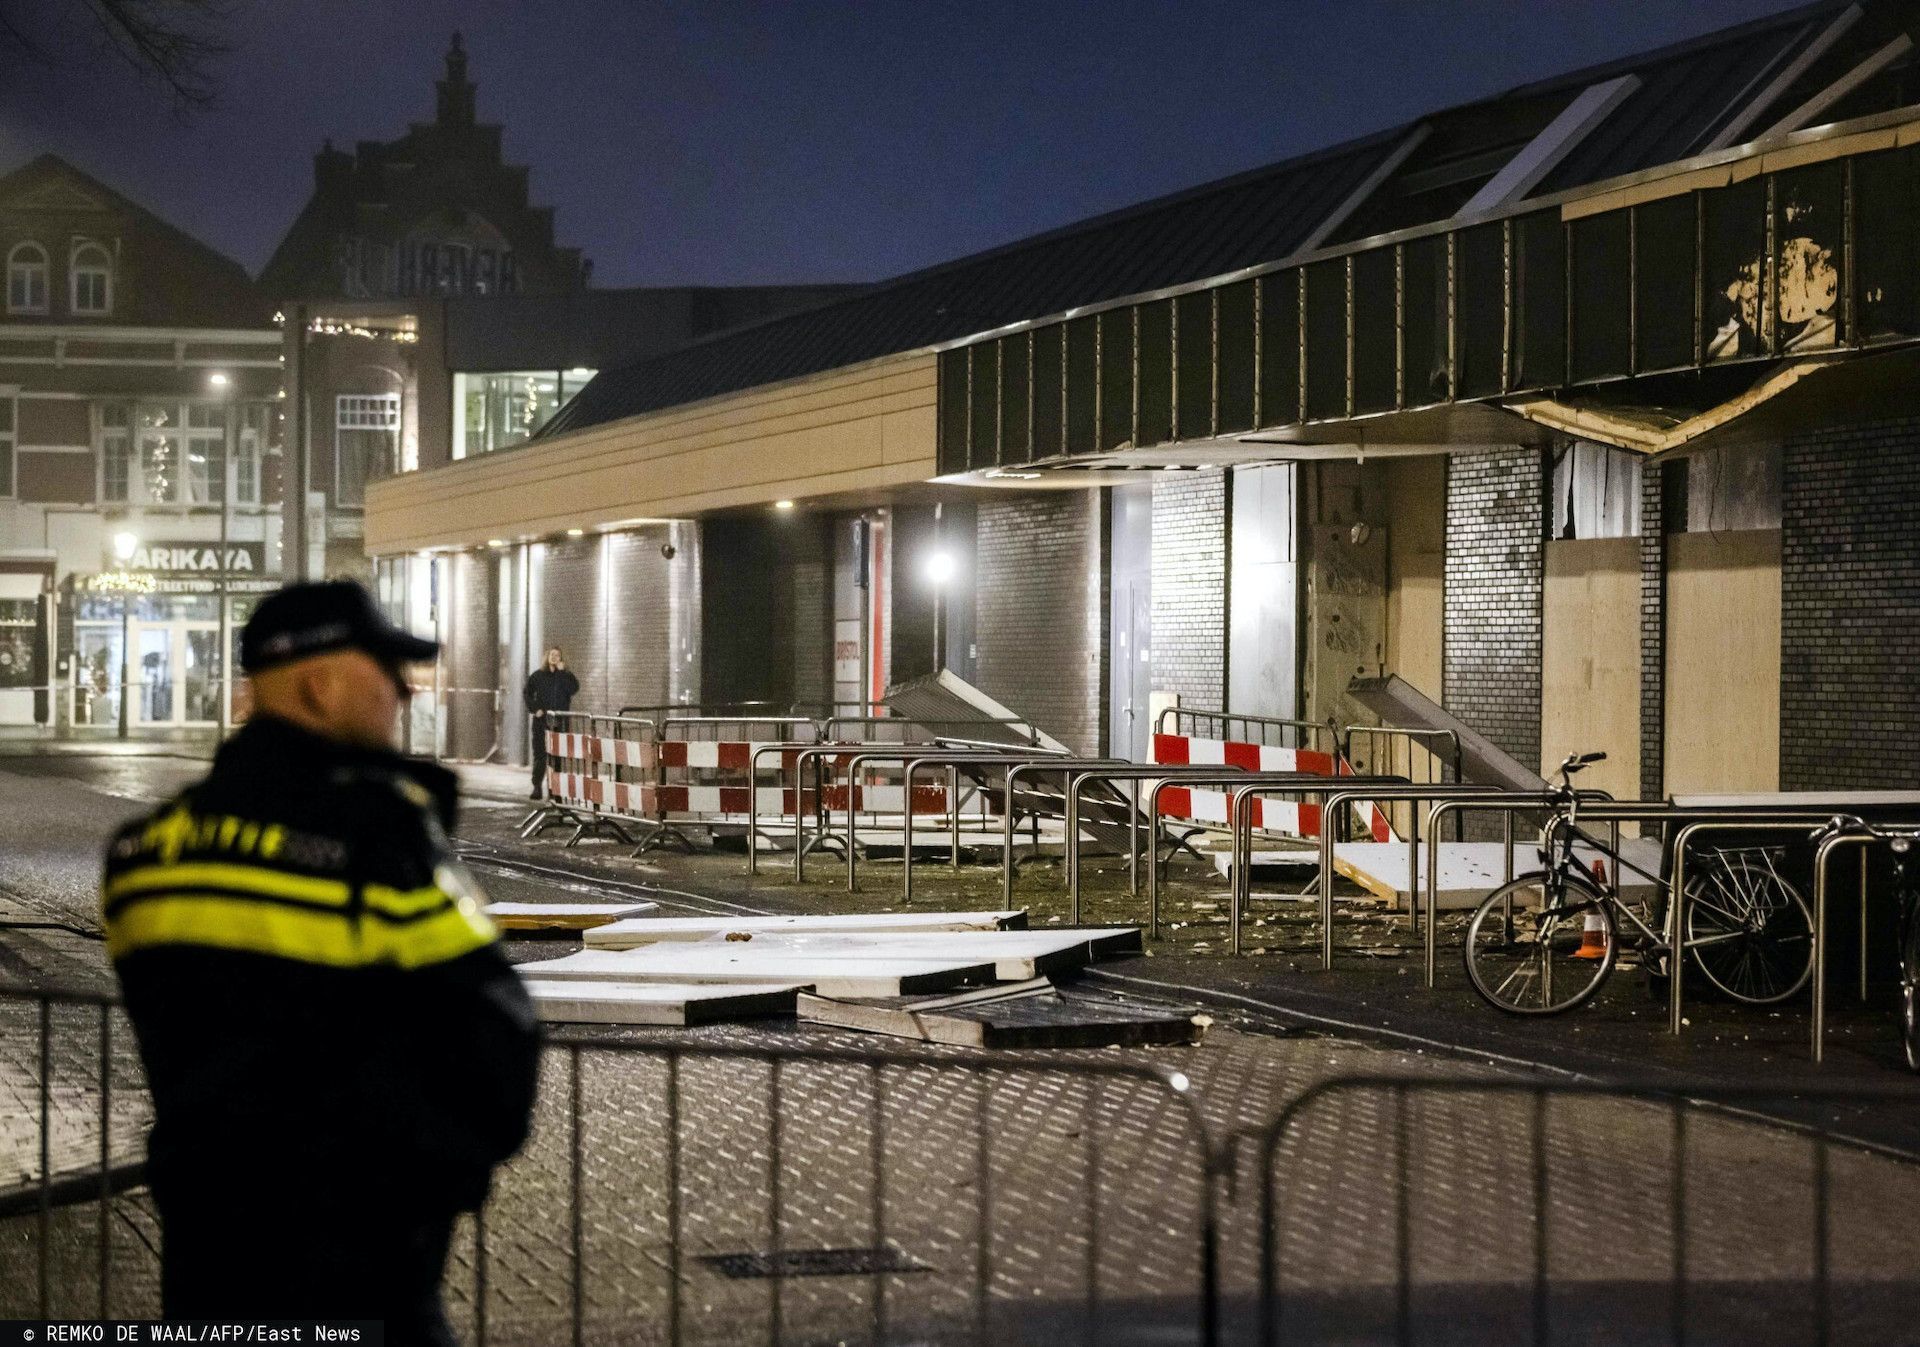 Wybuchy w polskich sklepach w Holandii, winni stanęli przed sądem